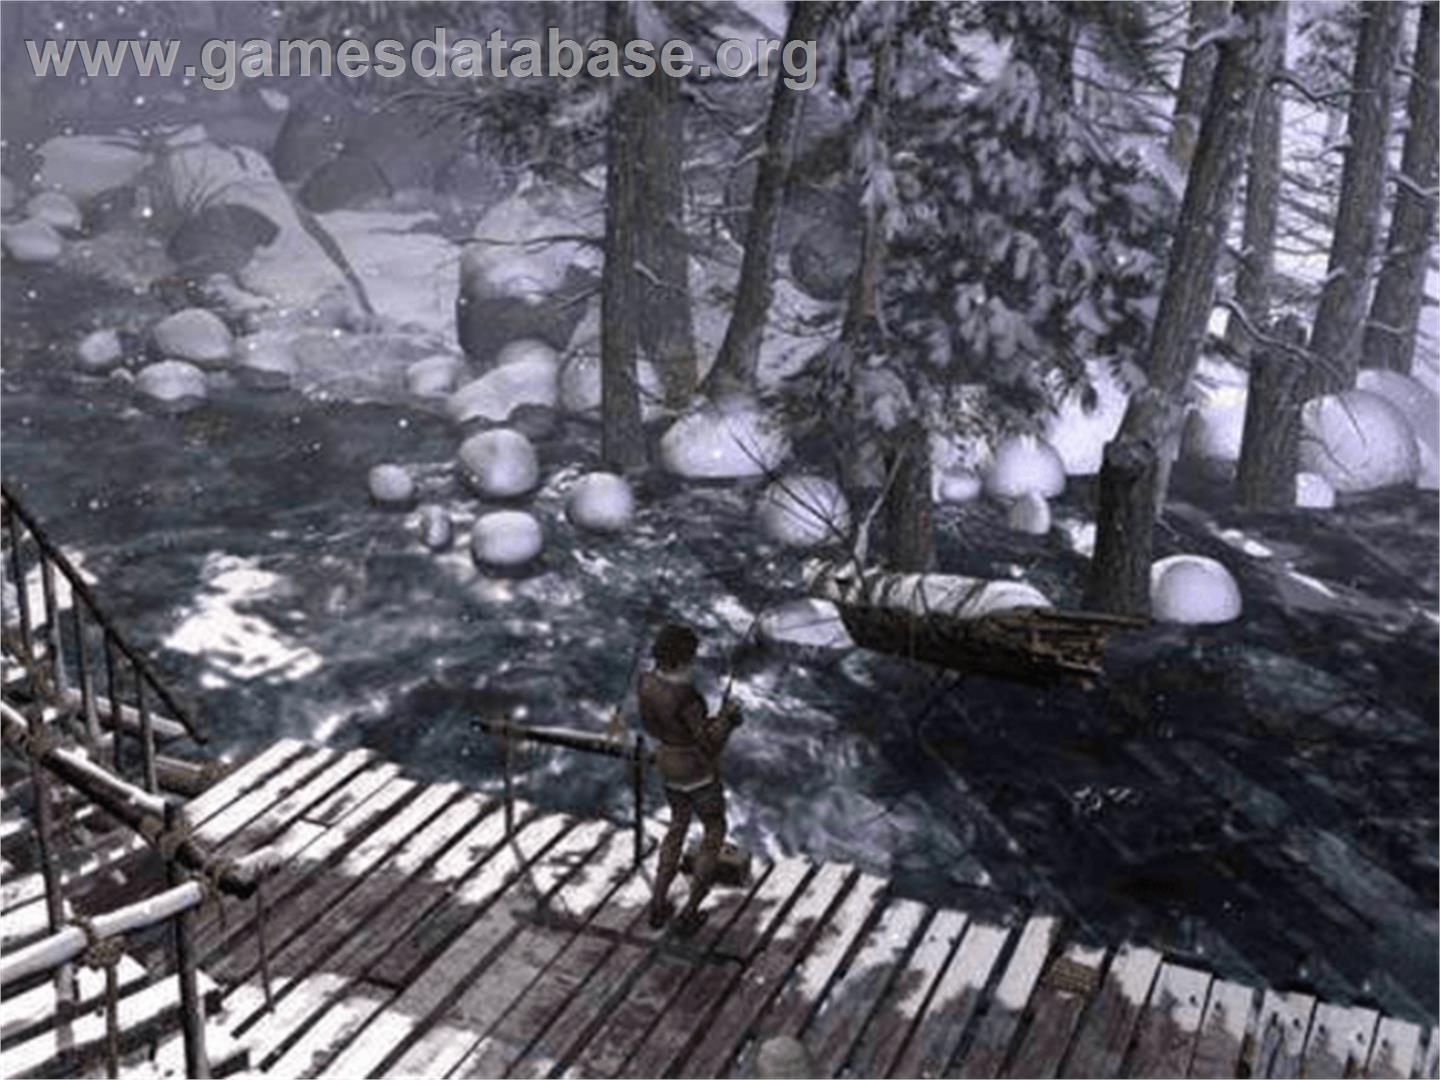 Syberia 2 - Microsoft Xbox - Artwork - In Game